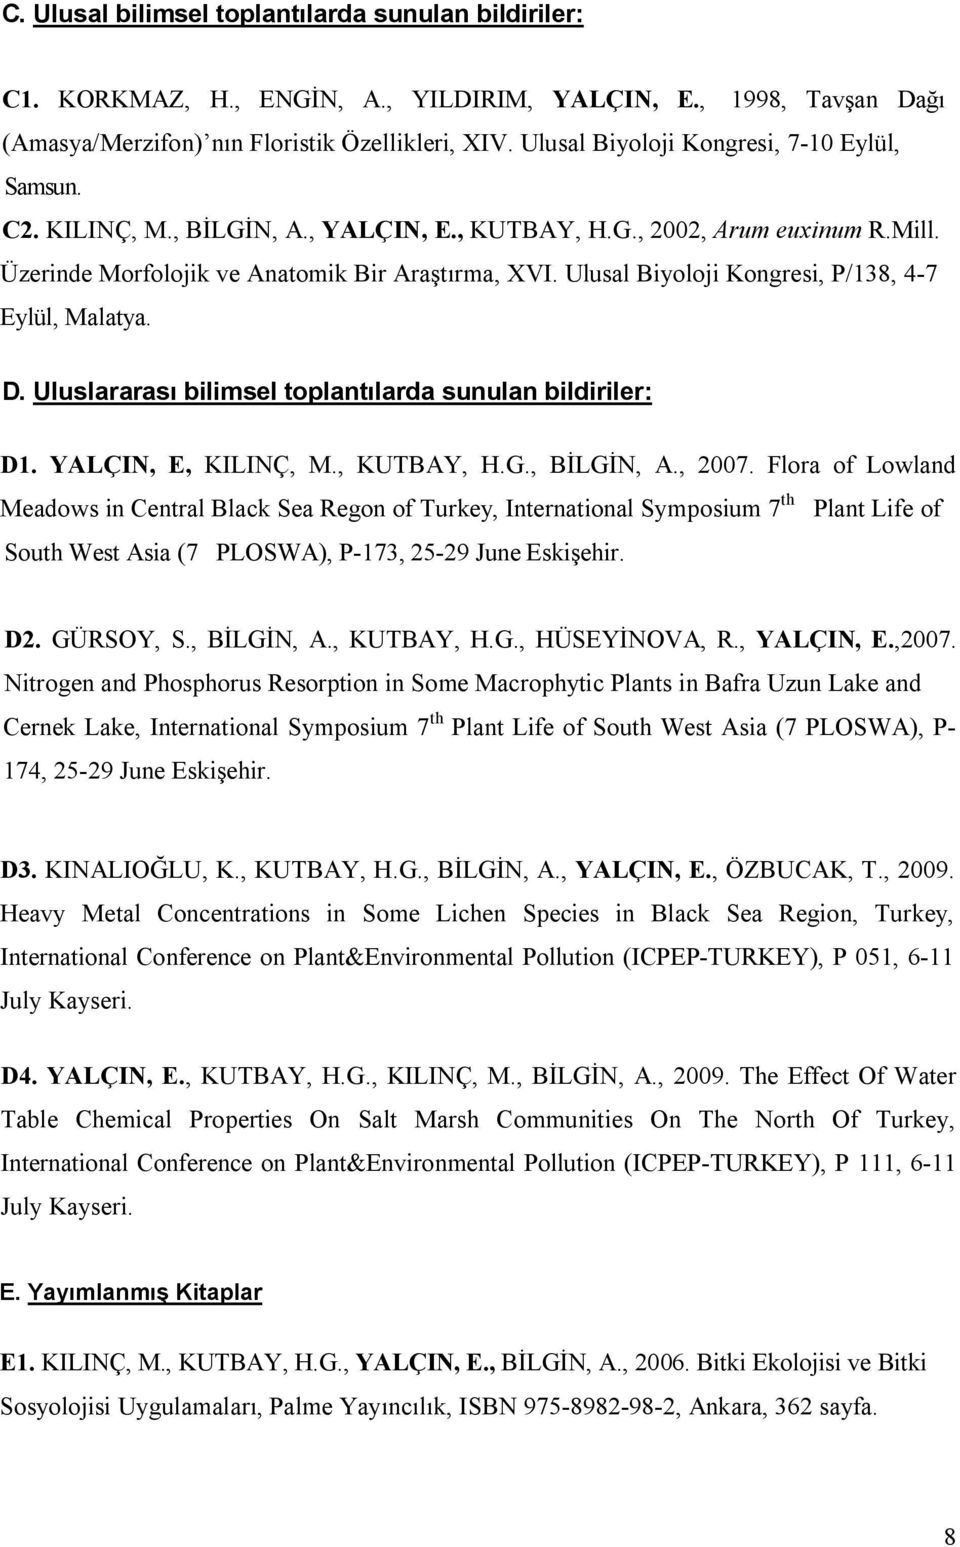 Ulusal Biyoloji Kongresi, P/138, 4-7 Eylül, Malatya. D. Uluslararası bilimsel toplantılarda sunulan bildiriler: D1. YALÇIN, E, KILINÇ, M., KUTBAY, H.G., BİLGİN, A., 2007.